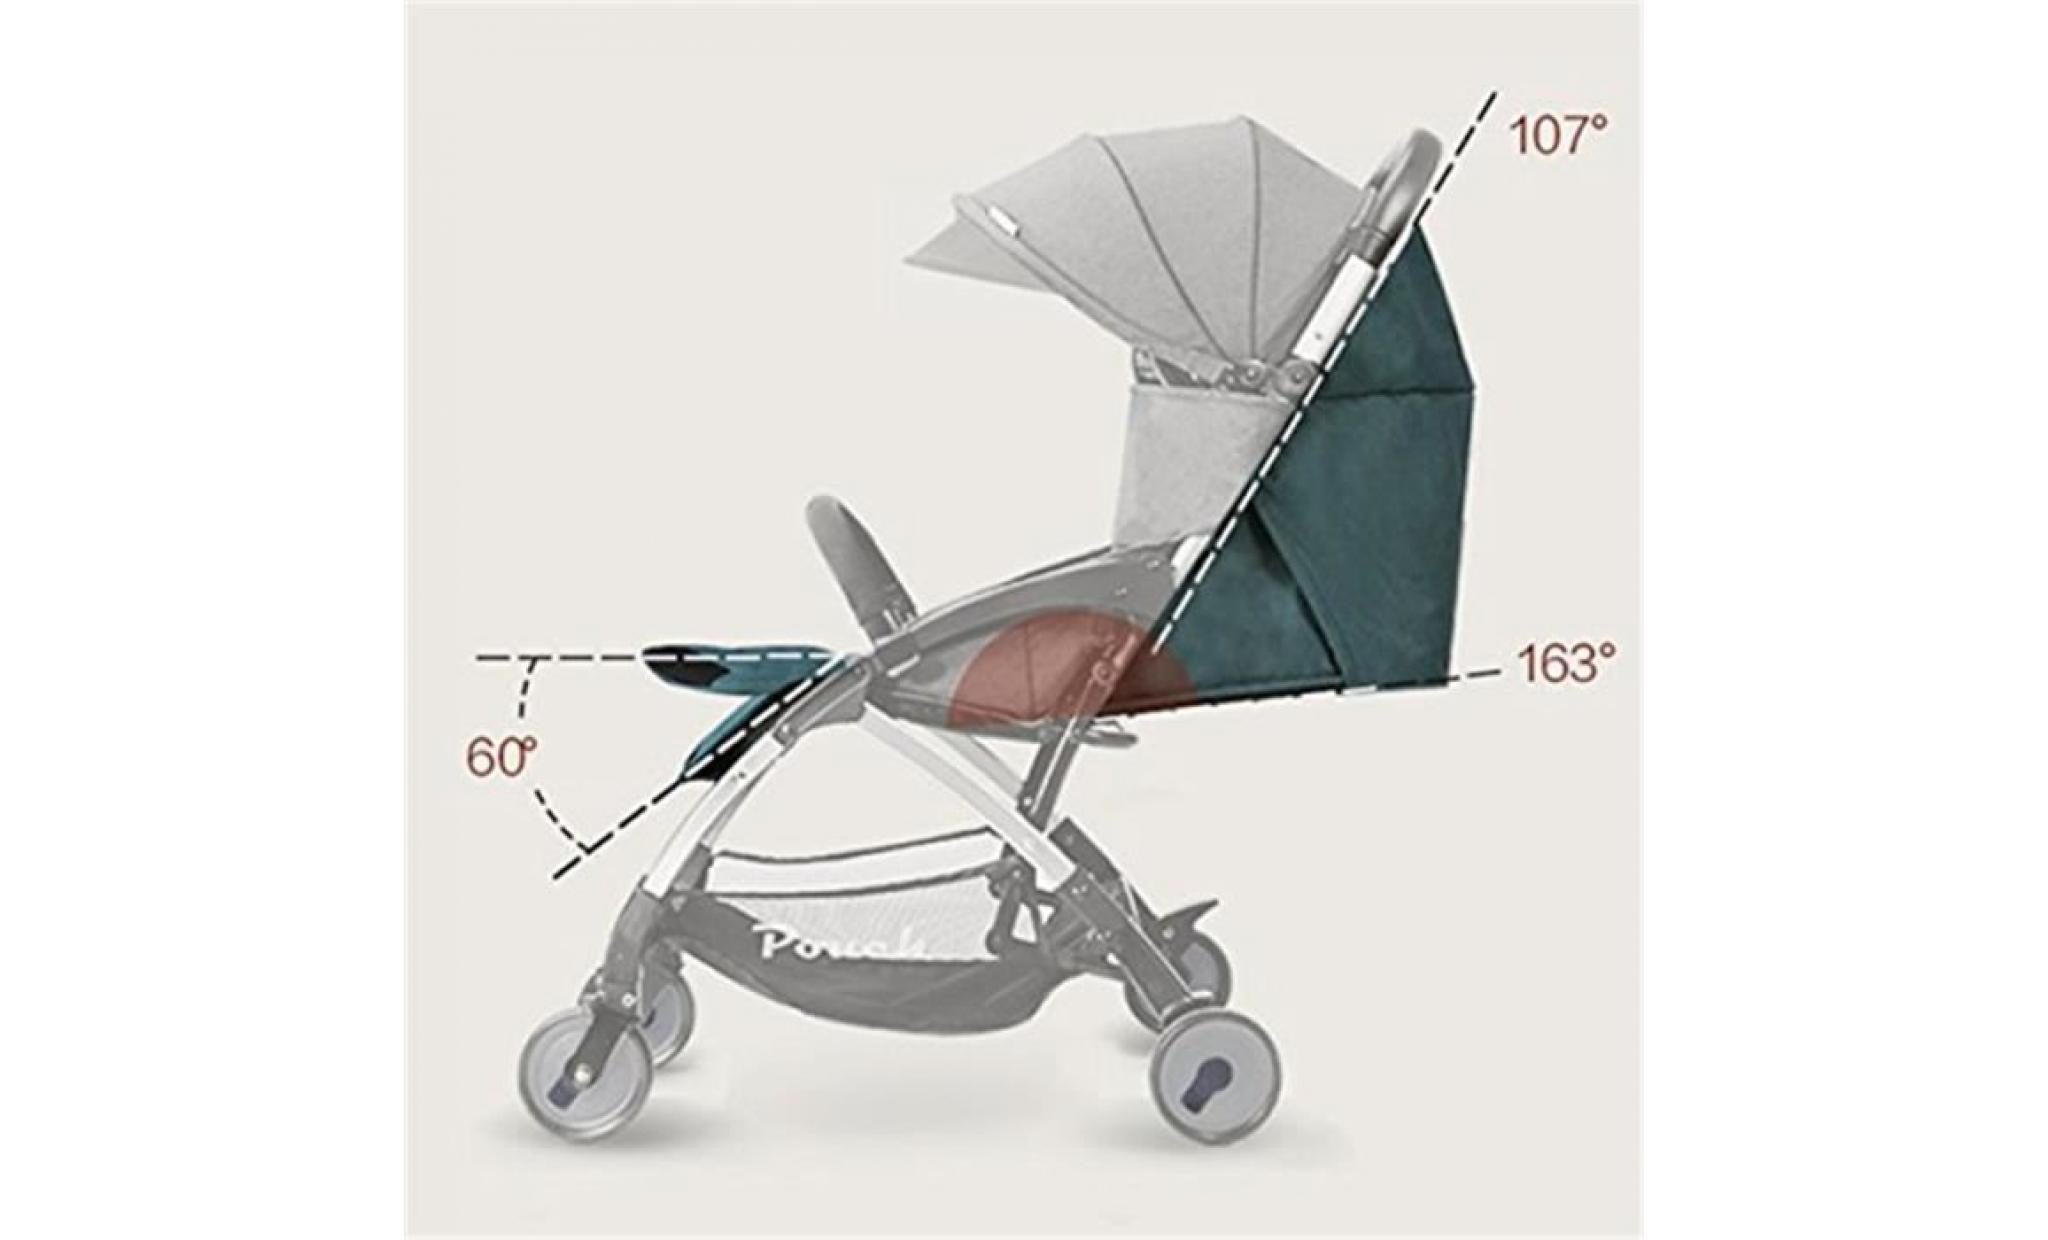 pouce 6.8kg léger poussette de bébé portable bébé trône, autorisé dans les landaus d'avion, peut asseoir & lie bébé chariots bébé pas cher